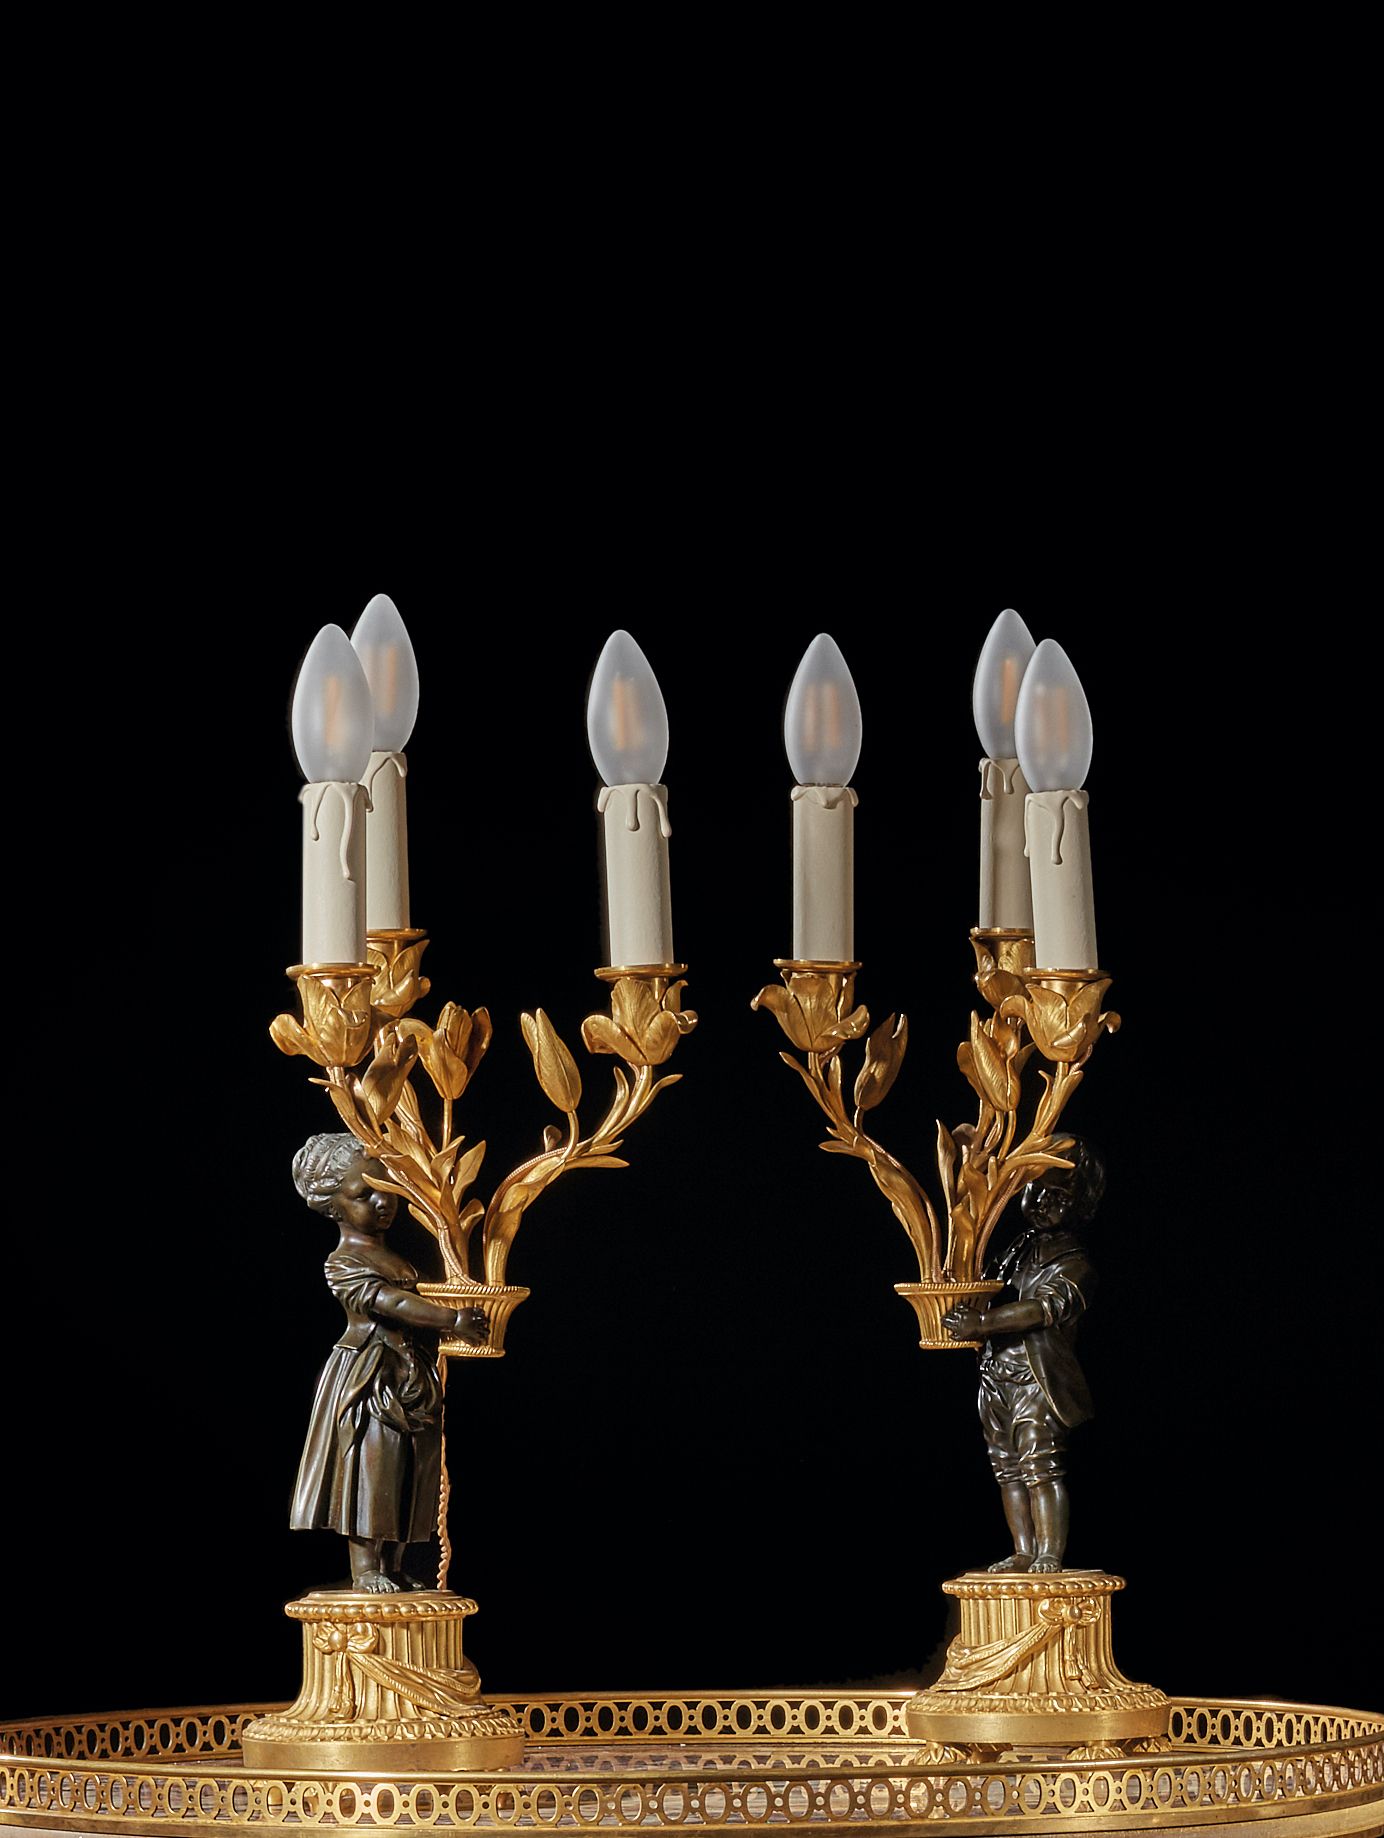 Null 一对三枝烛台，饰有一对手持花篮的儿童，青铜材质，有两种锈蚀。
路易十六风格
H.38 厘米